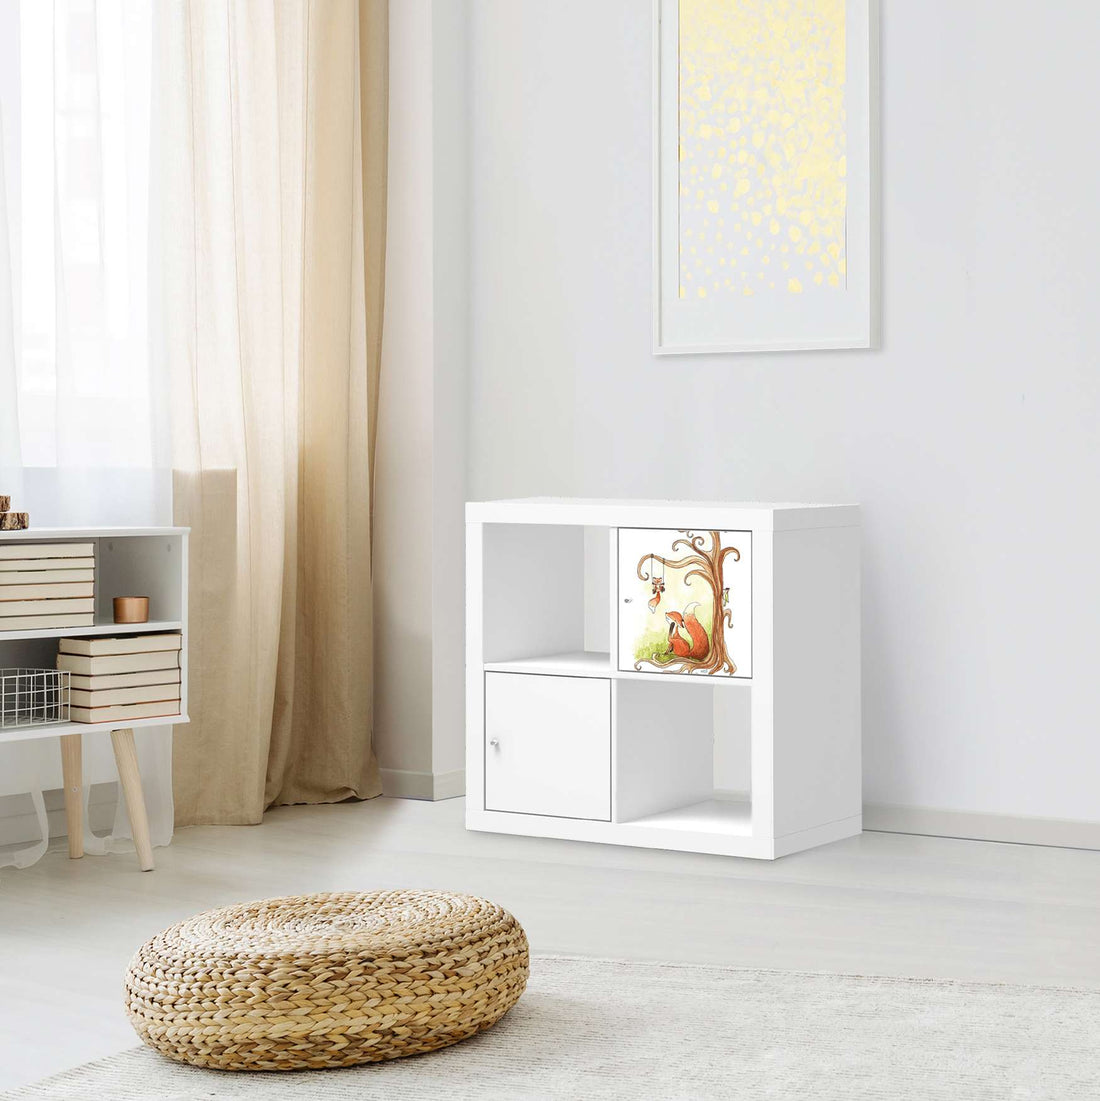 Selbstklebende Folie Füchse - IKEA Kallax Regal 1 Türe - Kinderzimmer